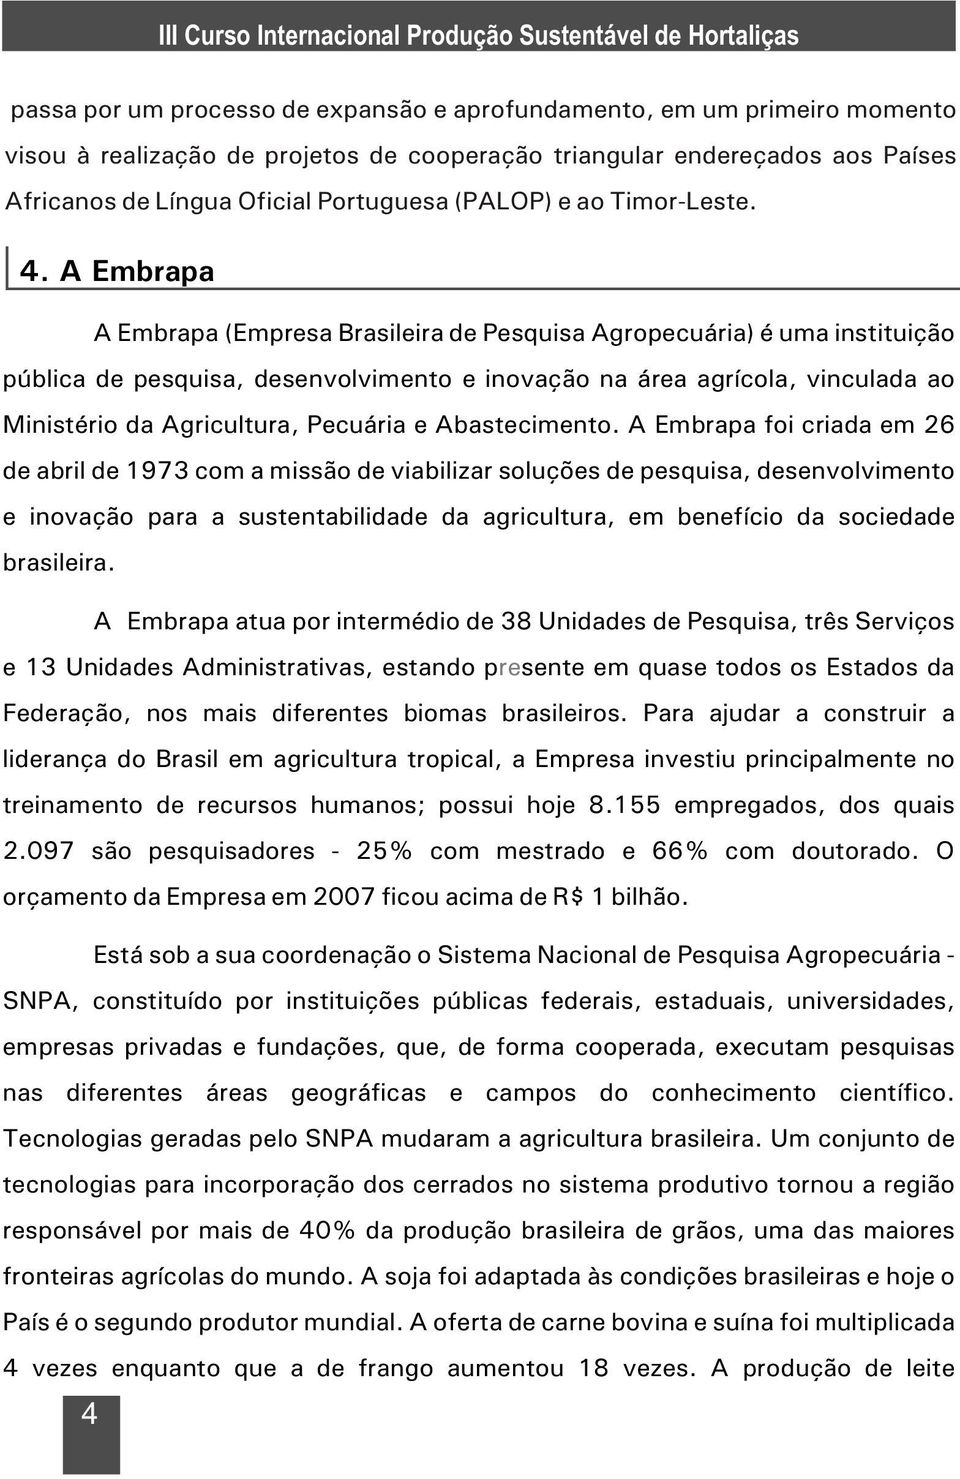 A Embrapa A Embrapa (Empresa Brasileira de Pesquisa Agropecuária) é uma instituição pública de pesquisa, desenvolvimento e inovação na área agrícola, vinculada ao Ministério da Agricultura, Pecuária